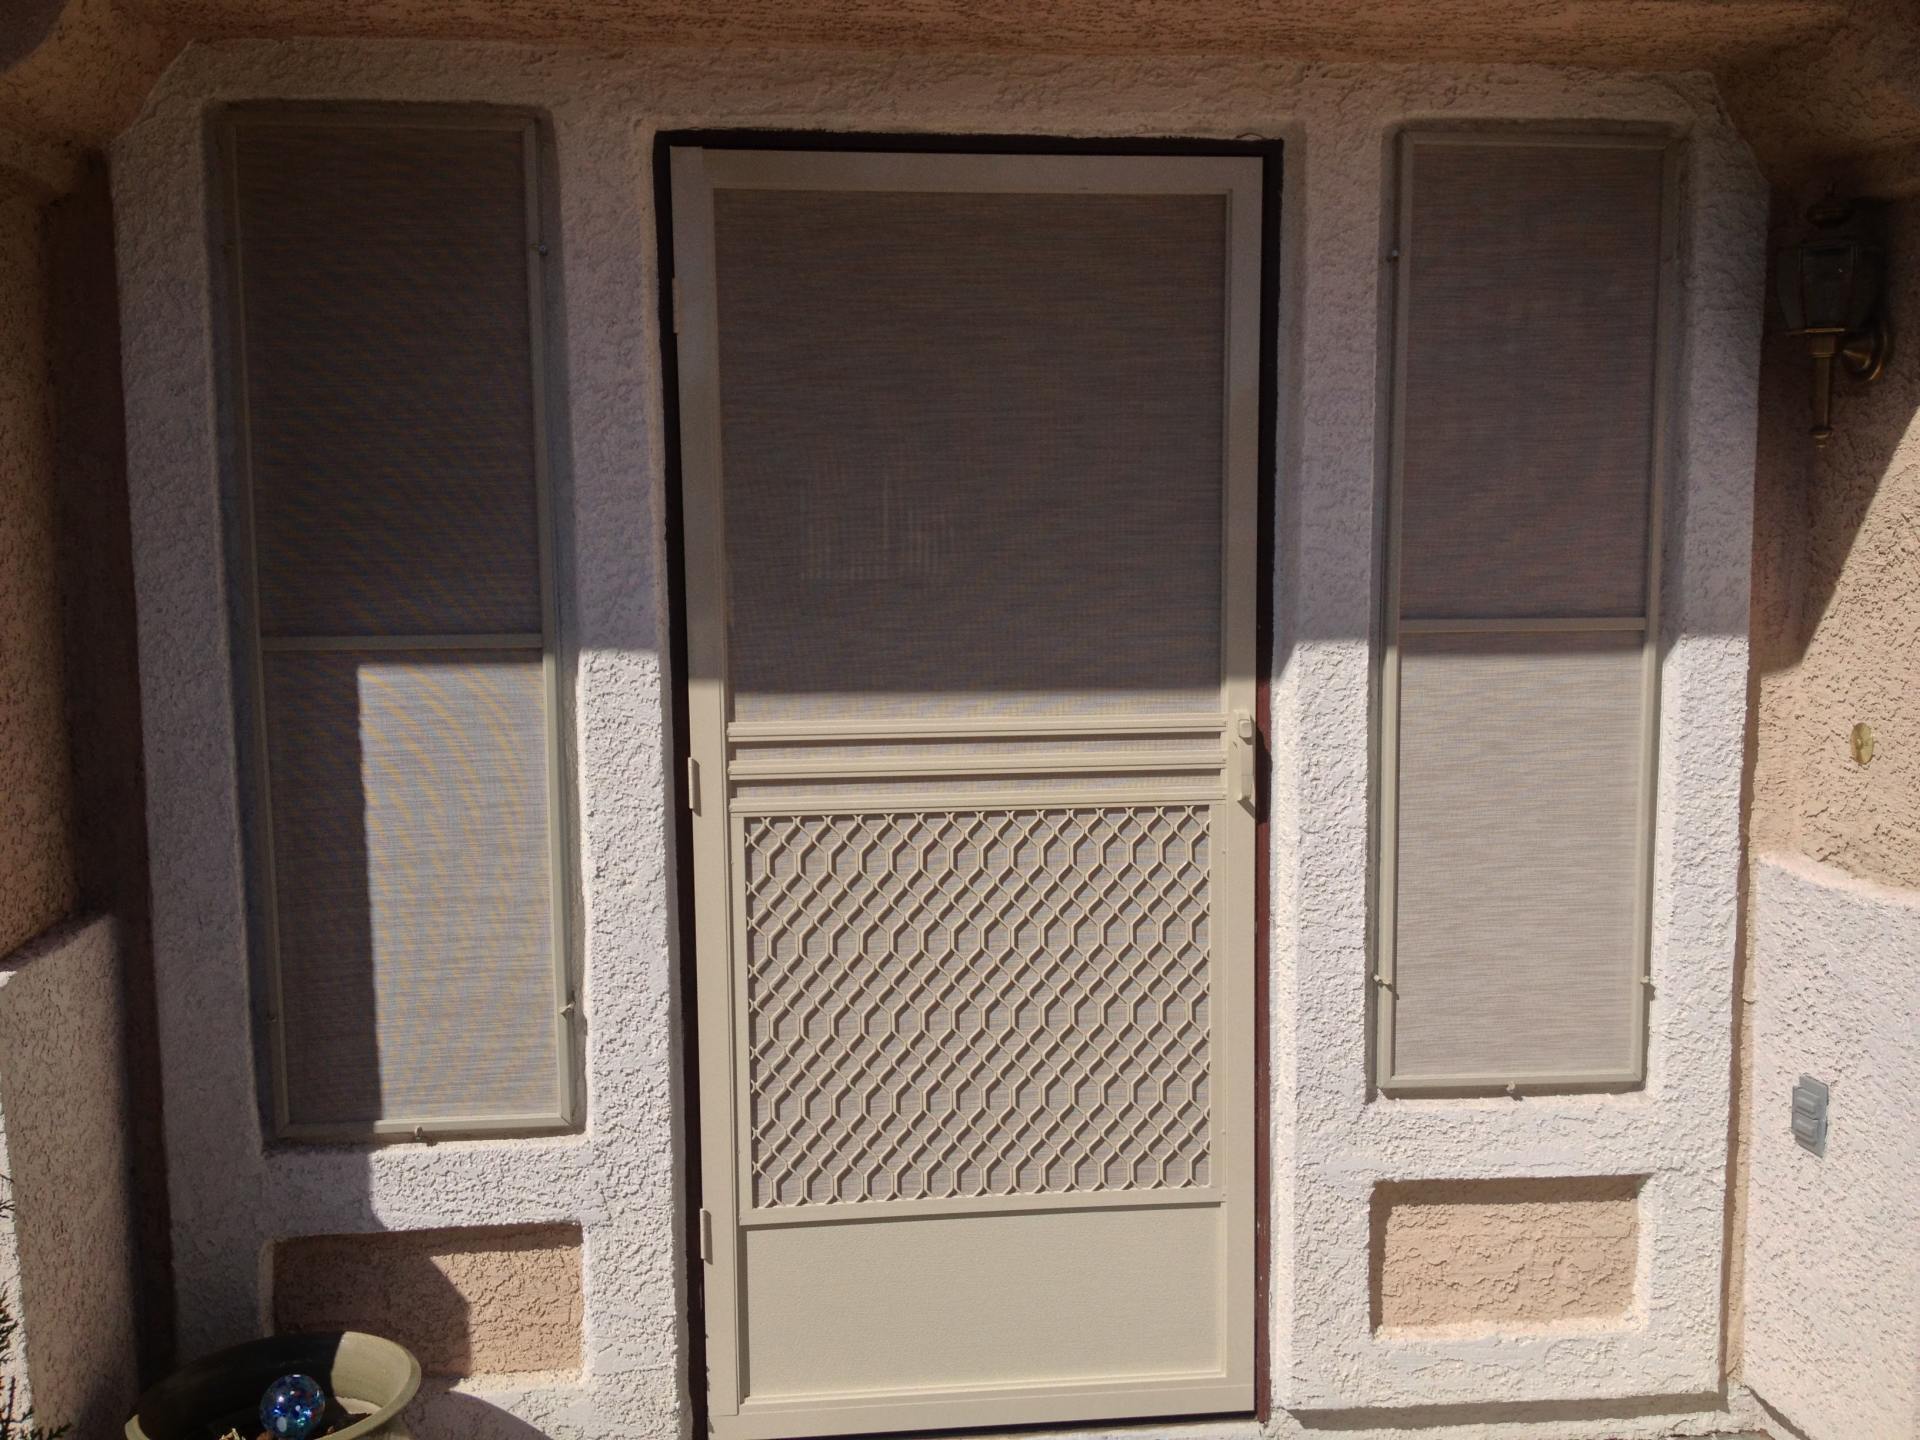 Door with Solar Screens - Heat Protection in Las Vegas, NV